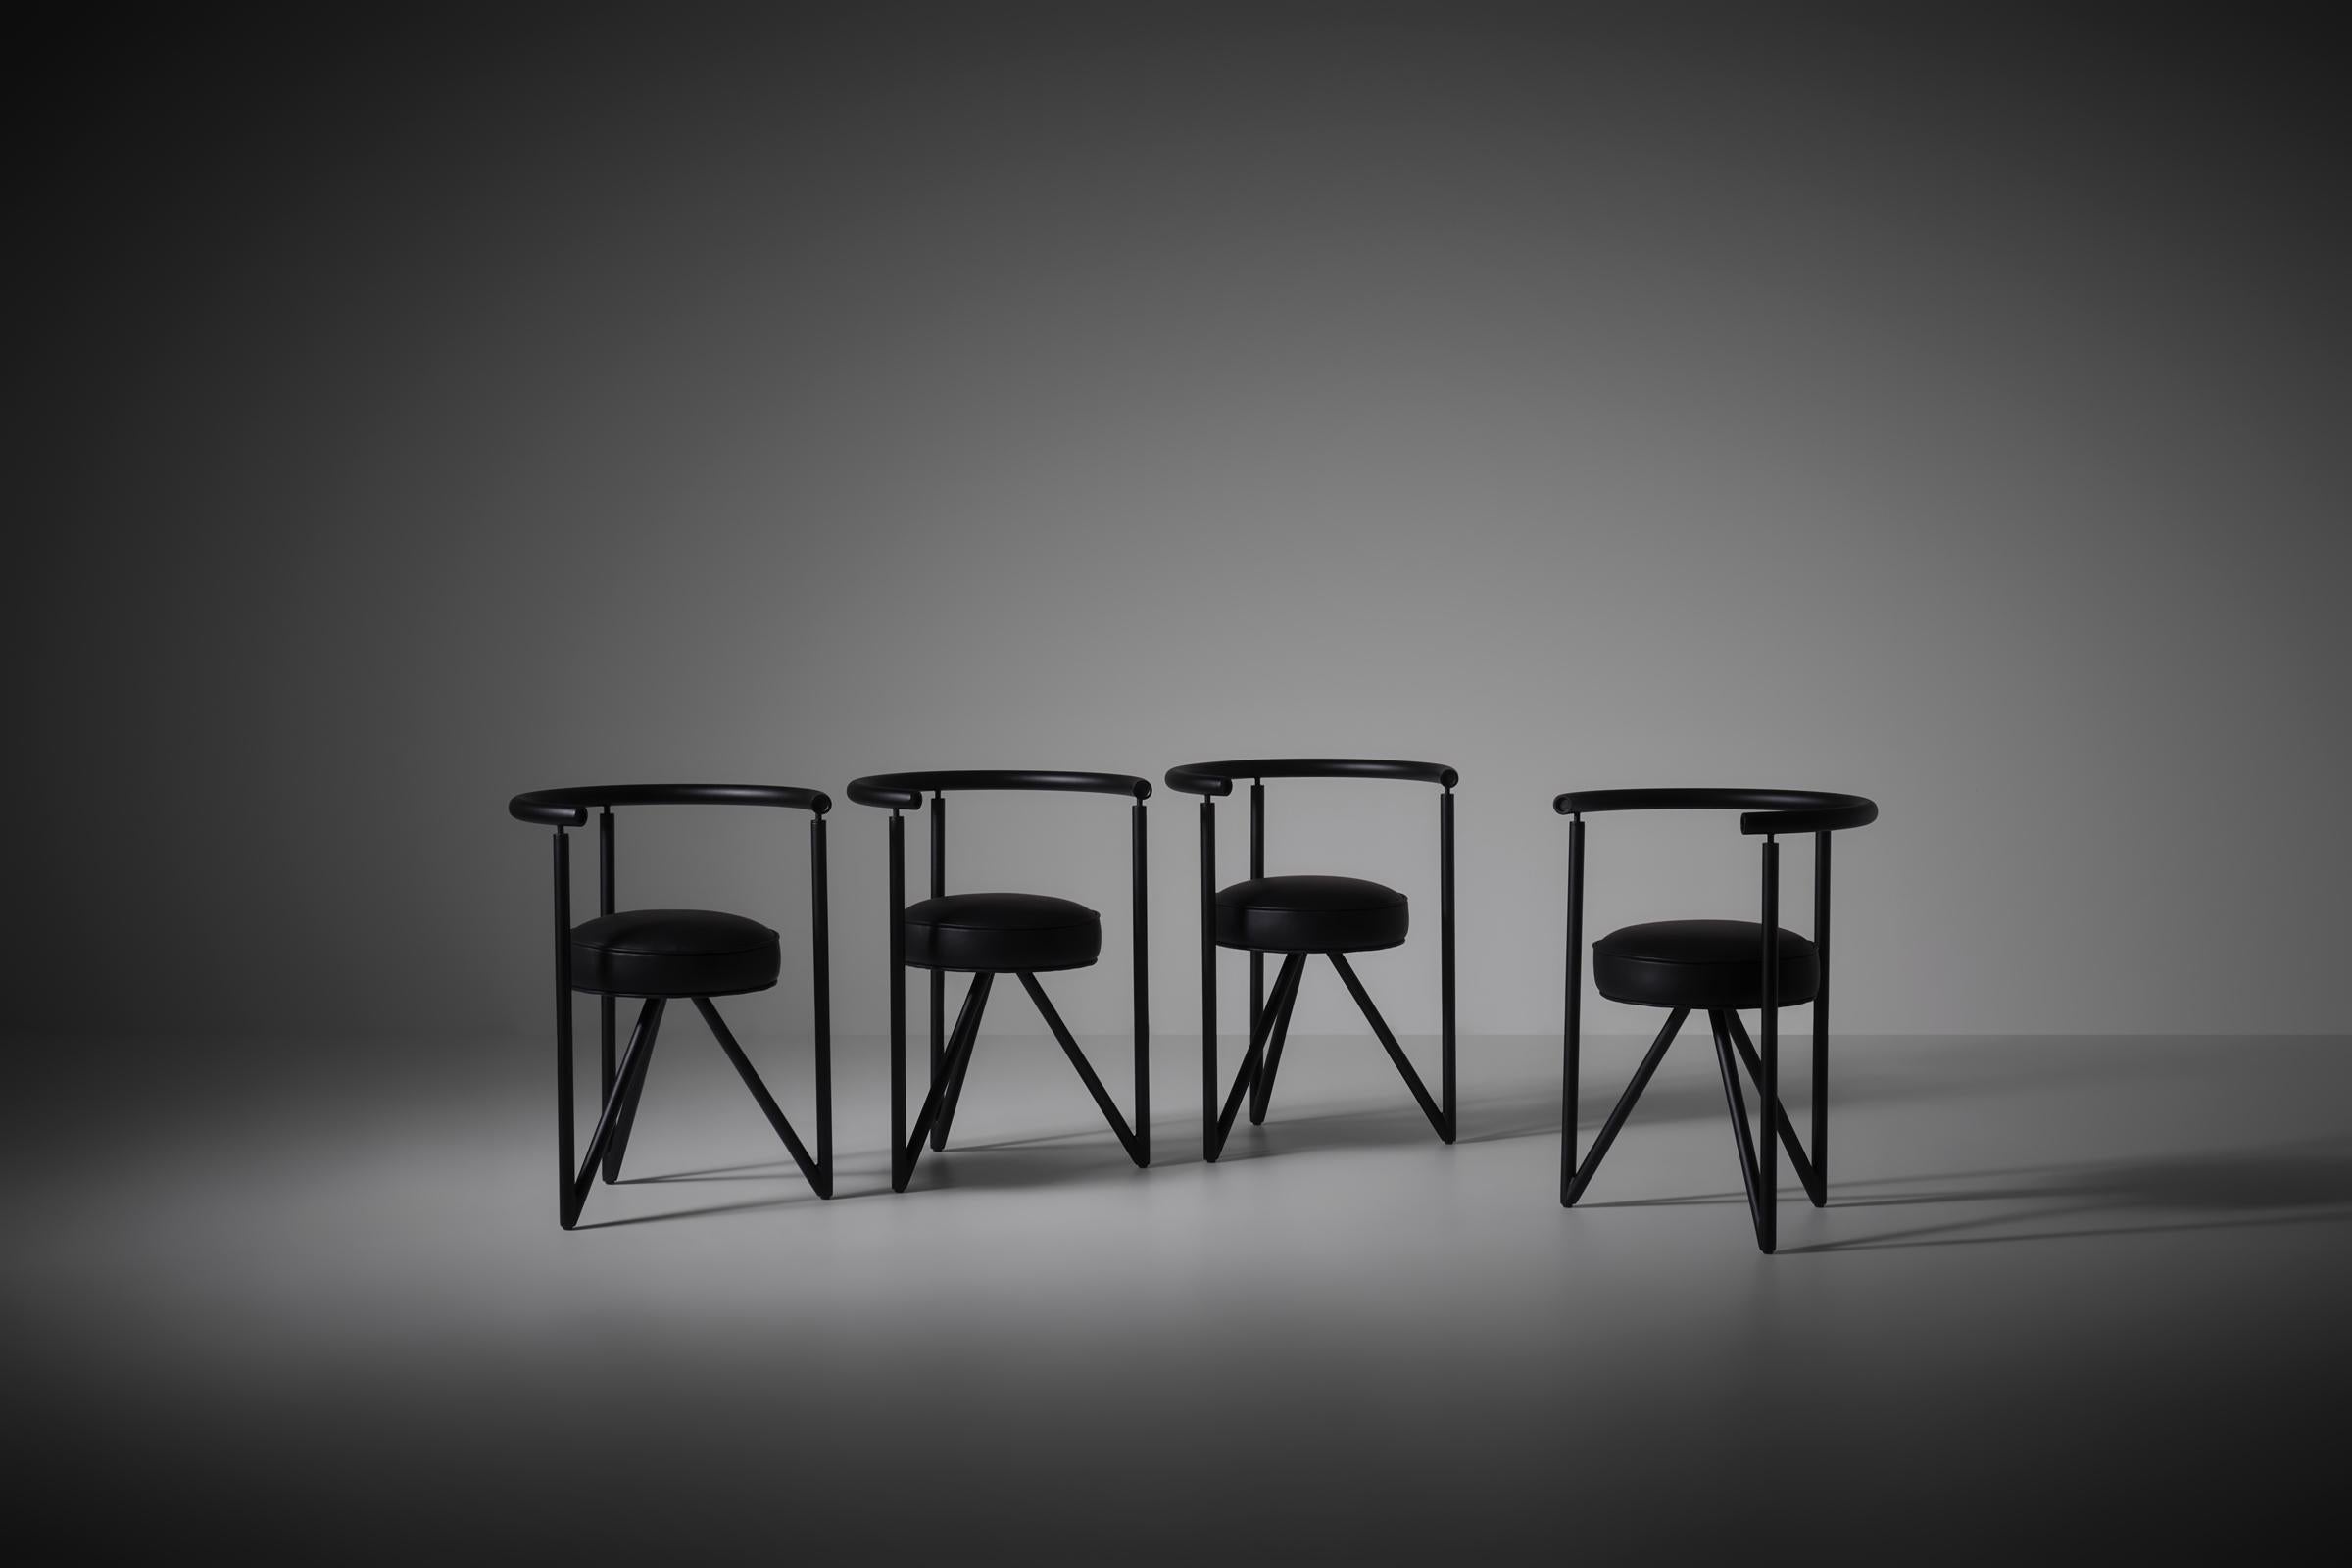 Miss Dorn Stühle von Philippe Starck für Disform, 1982. Schwarz beschichtete Stahlrohrrahmen und runde, zylindrische Sitze aus schwarzem Leder. Die Kombination von Primärformen und harten Linien verleiht den Stühlen eine sehr interessante